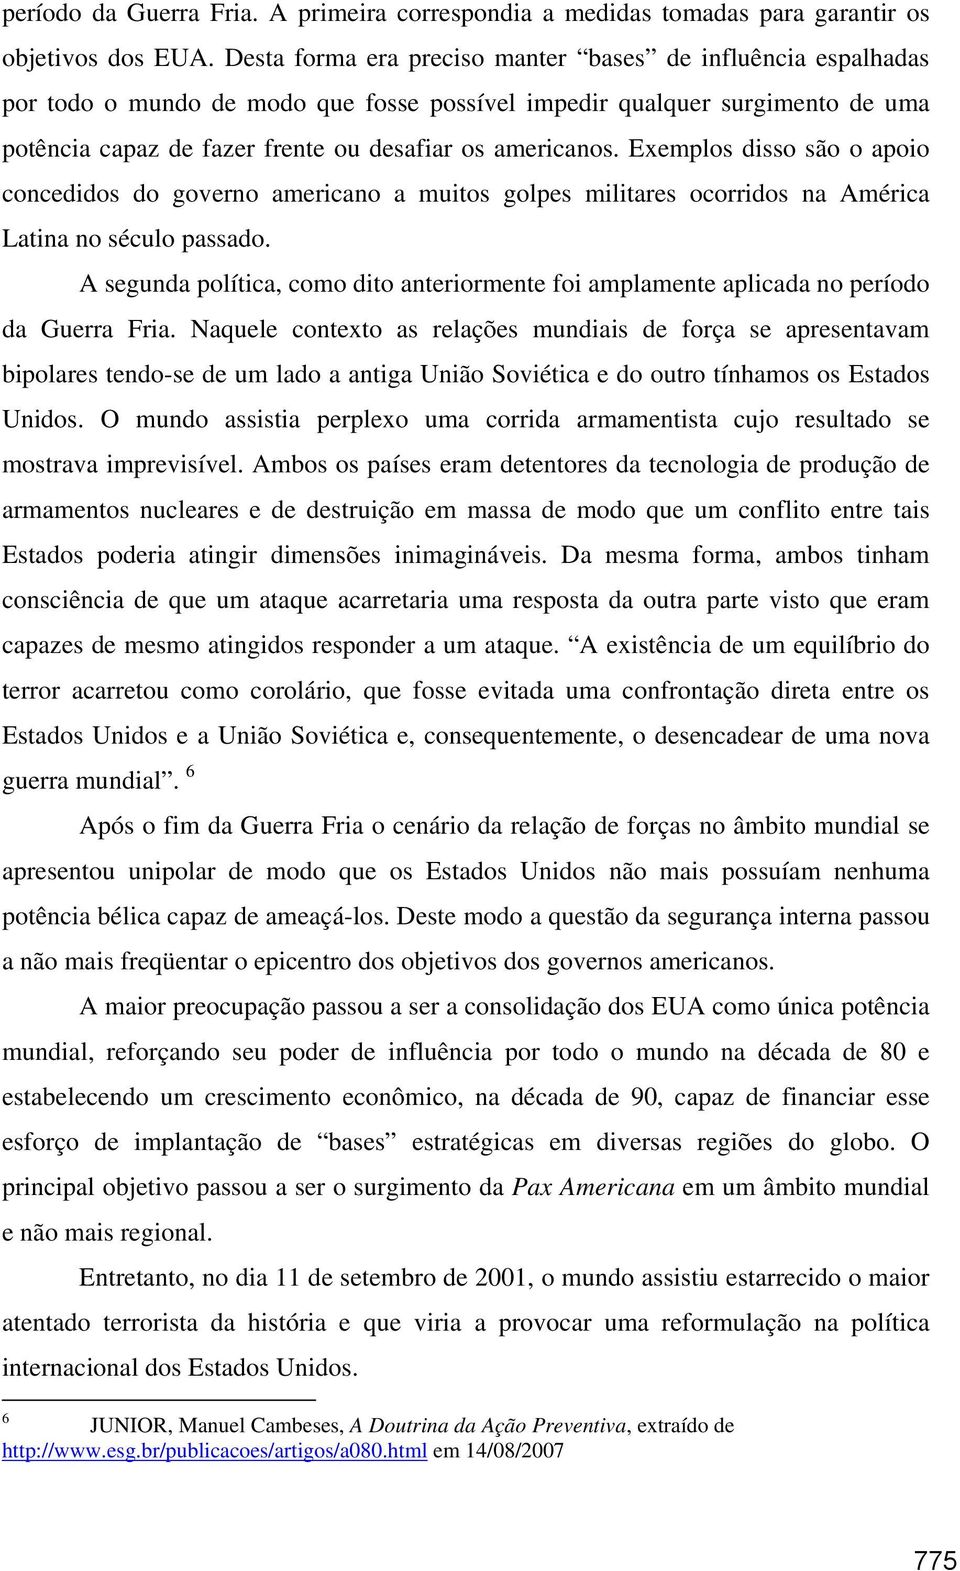 Exemplos disso são o apoio concedidos do governo americano a muitos golpes militares ocorridos na América Latina no século passado.